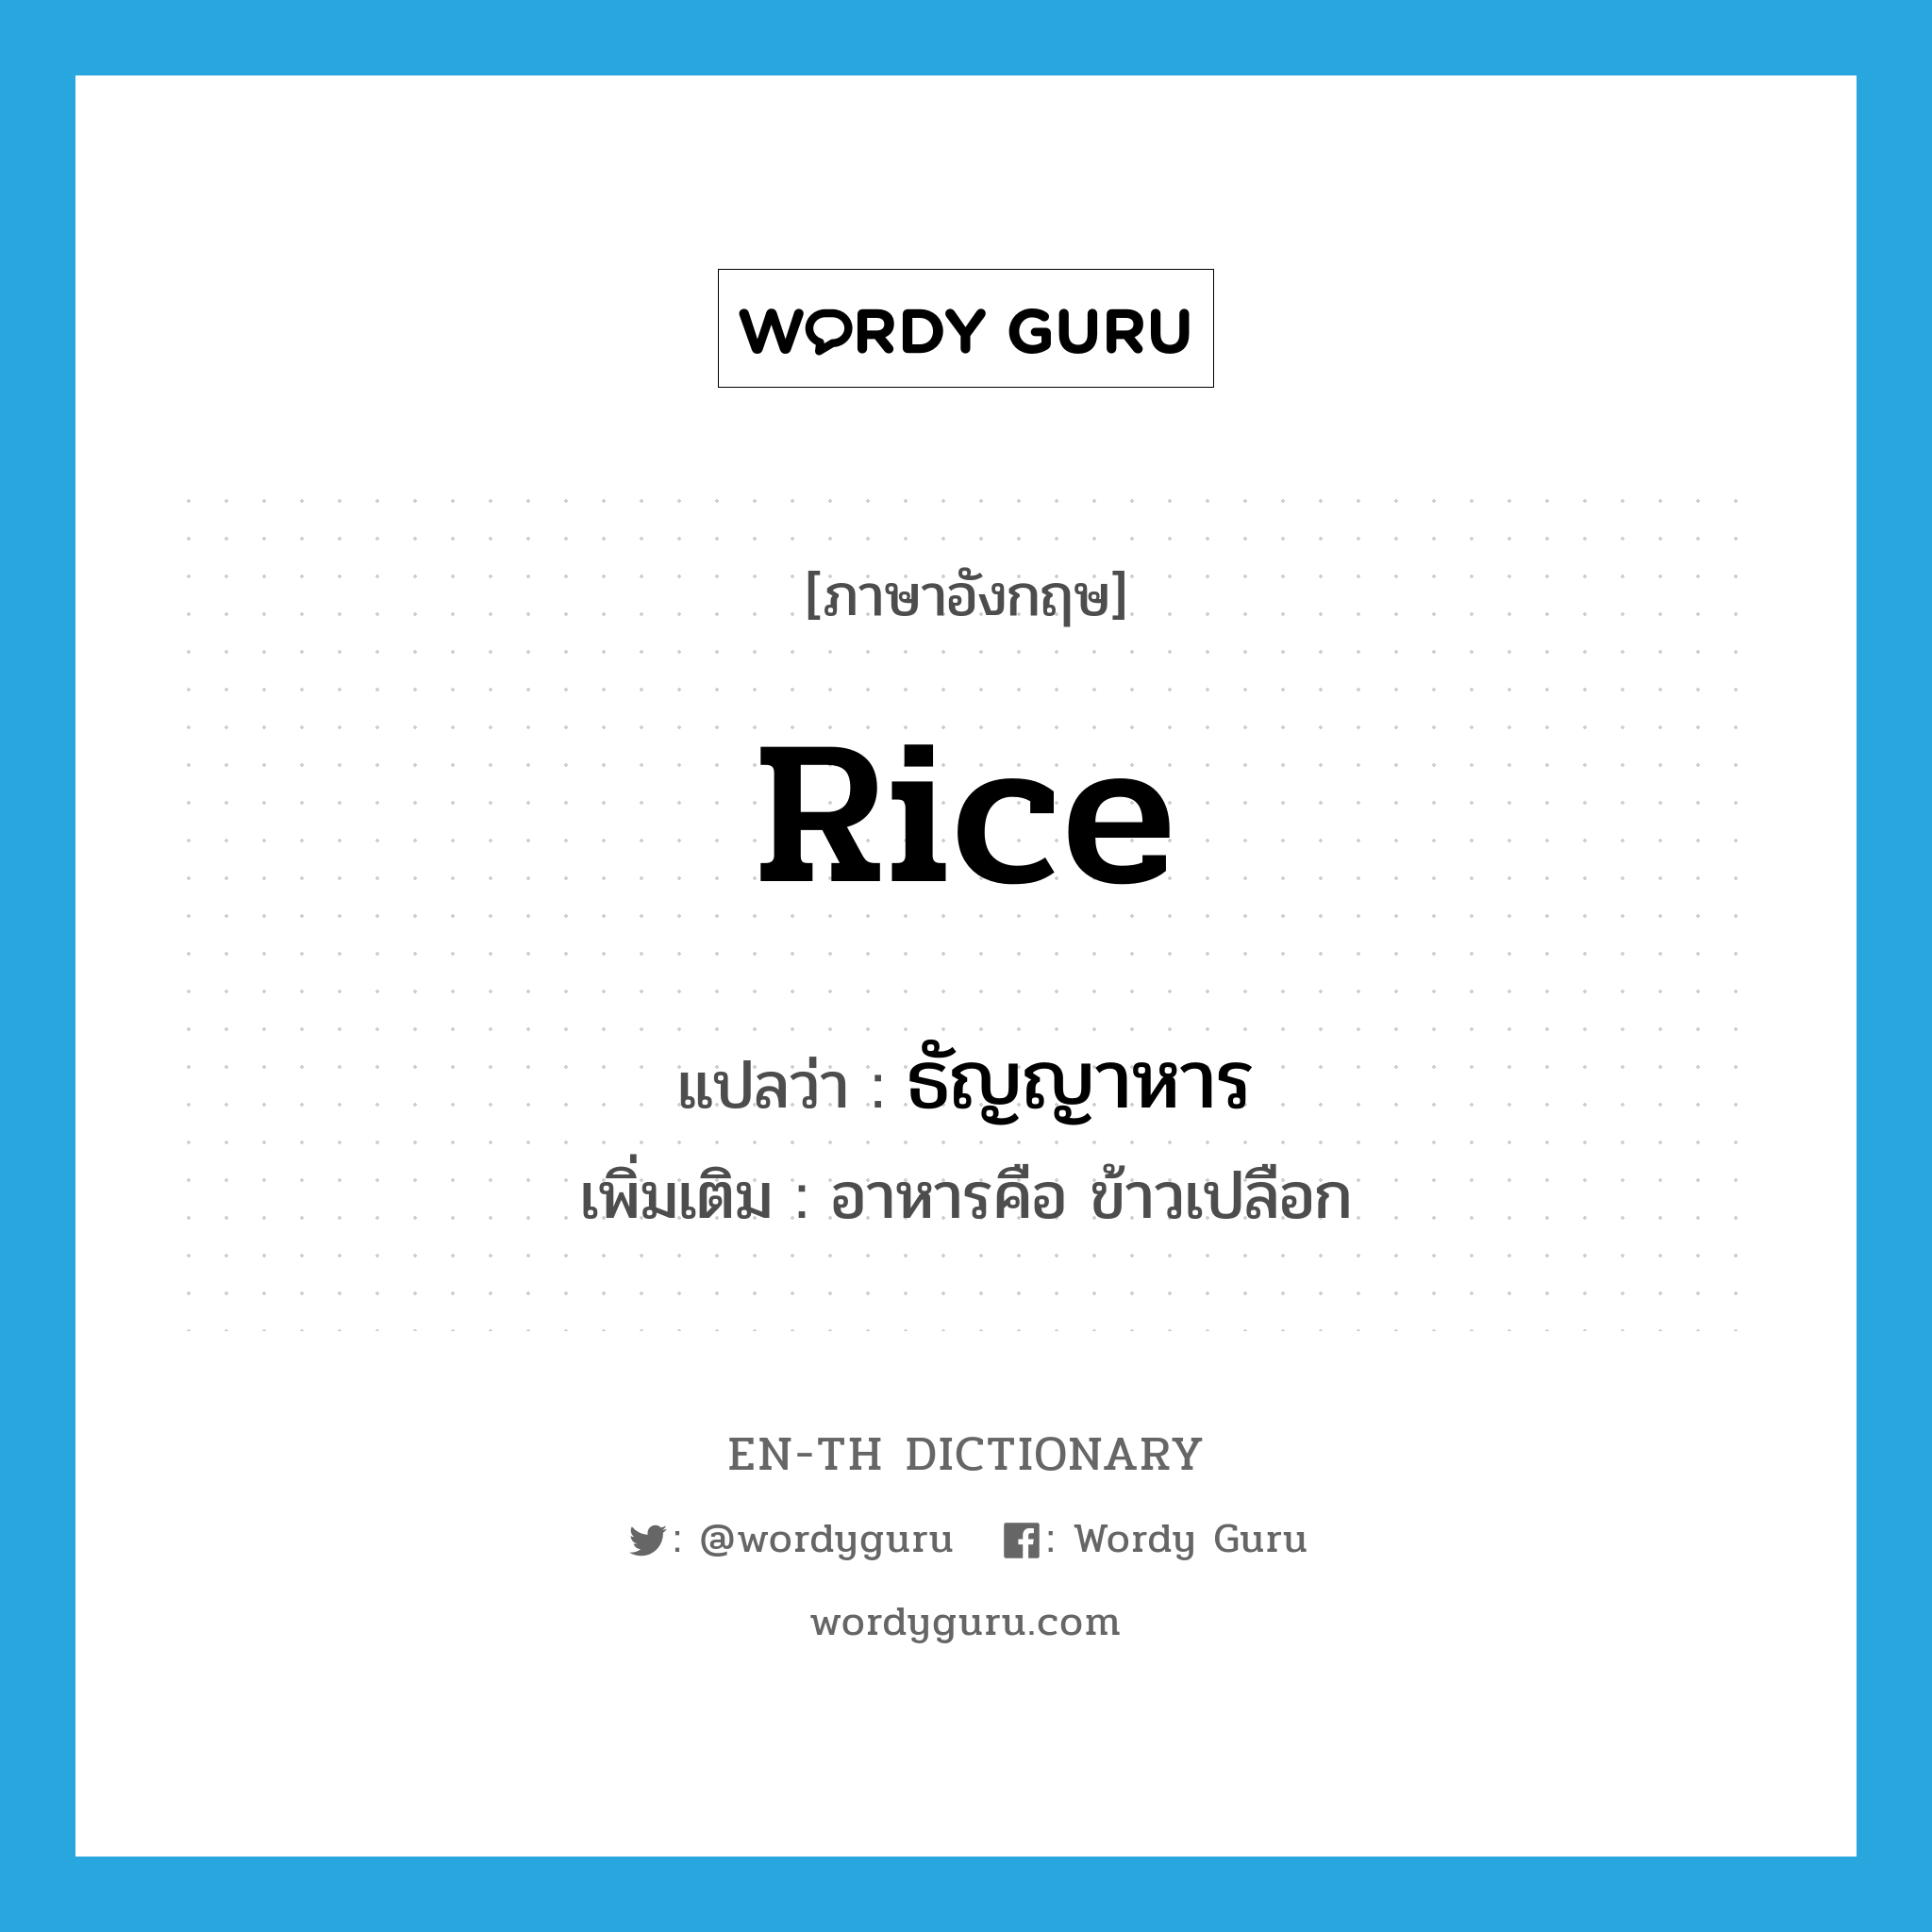 ธัญญาหาร ภาษาอังกฤษ?, คำศัพท์ภาษาอังกฤษ ธัญญาหาร แปลว่า rice ประเภท N เพิ่มเติม อาหารคือ ข้าวเปลือก หมวด N